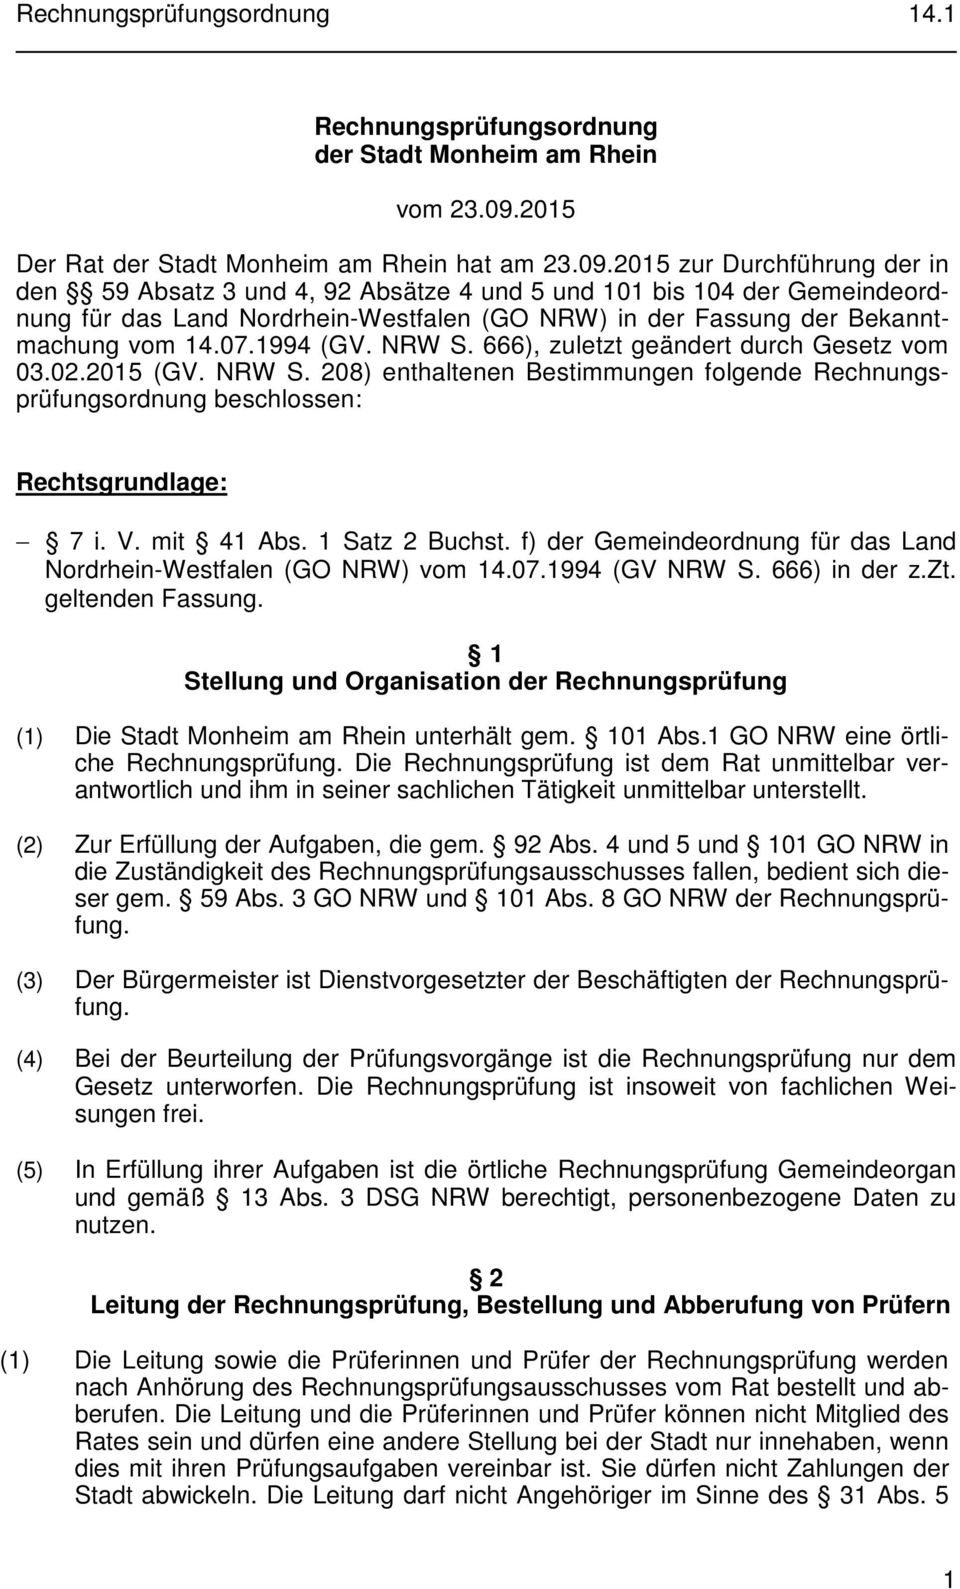 2015 zur Durchführung der in den 59 Absatz 3 und 4, 92 Absätze 4 und 5 und 101 bis 104 der Gemeindeordnung für das Land Nordrhein-Westfalen (GO NRW) in der Fassung der Bekanntmachung vom 14.07.